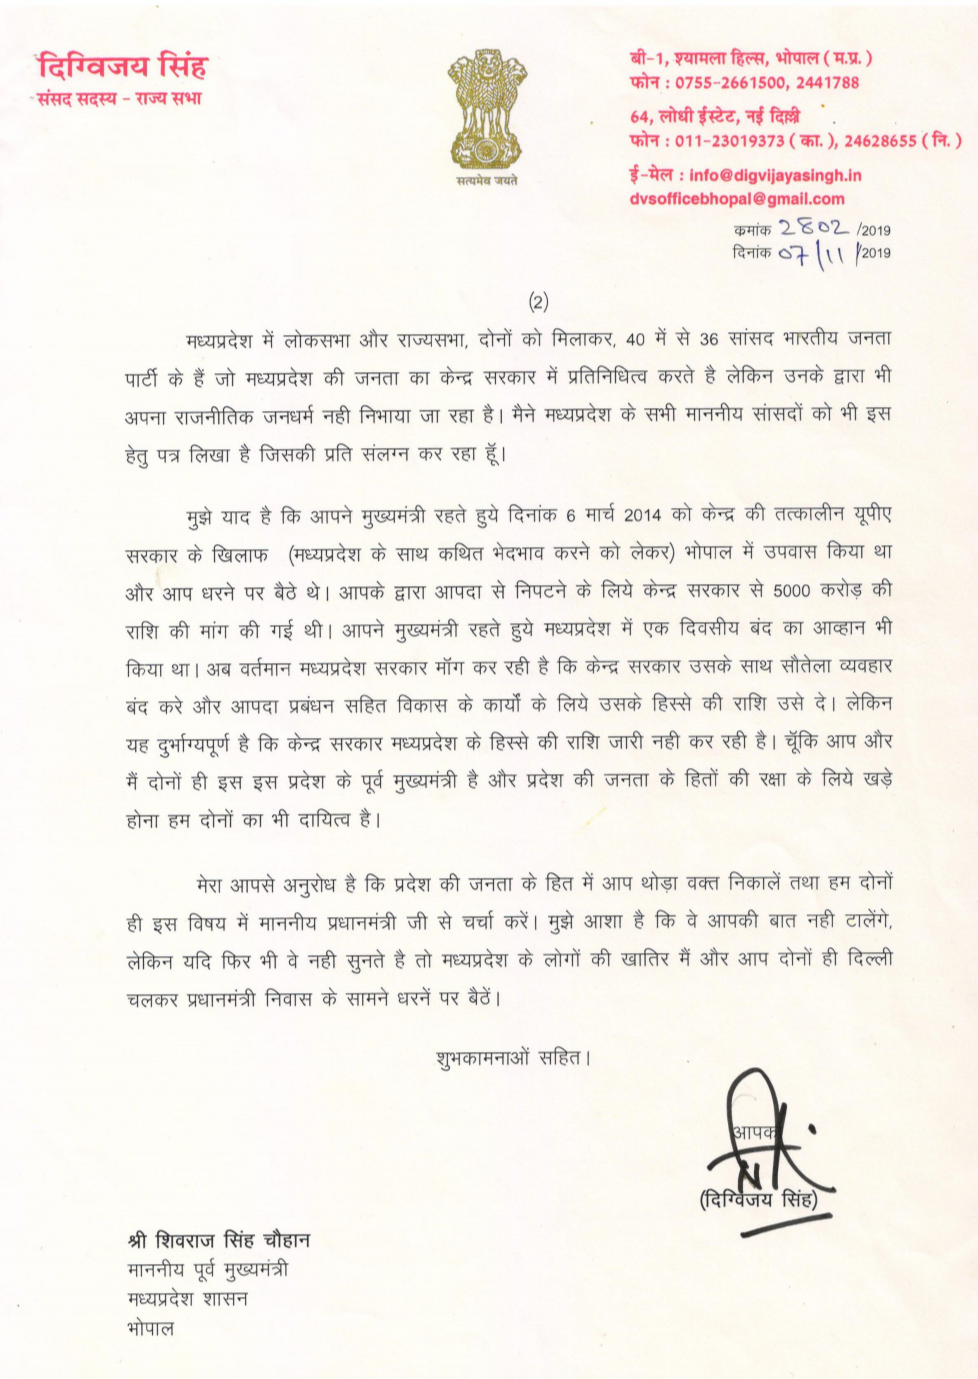 Digvijay Singh wrote a letter to Shivraj Singh